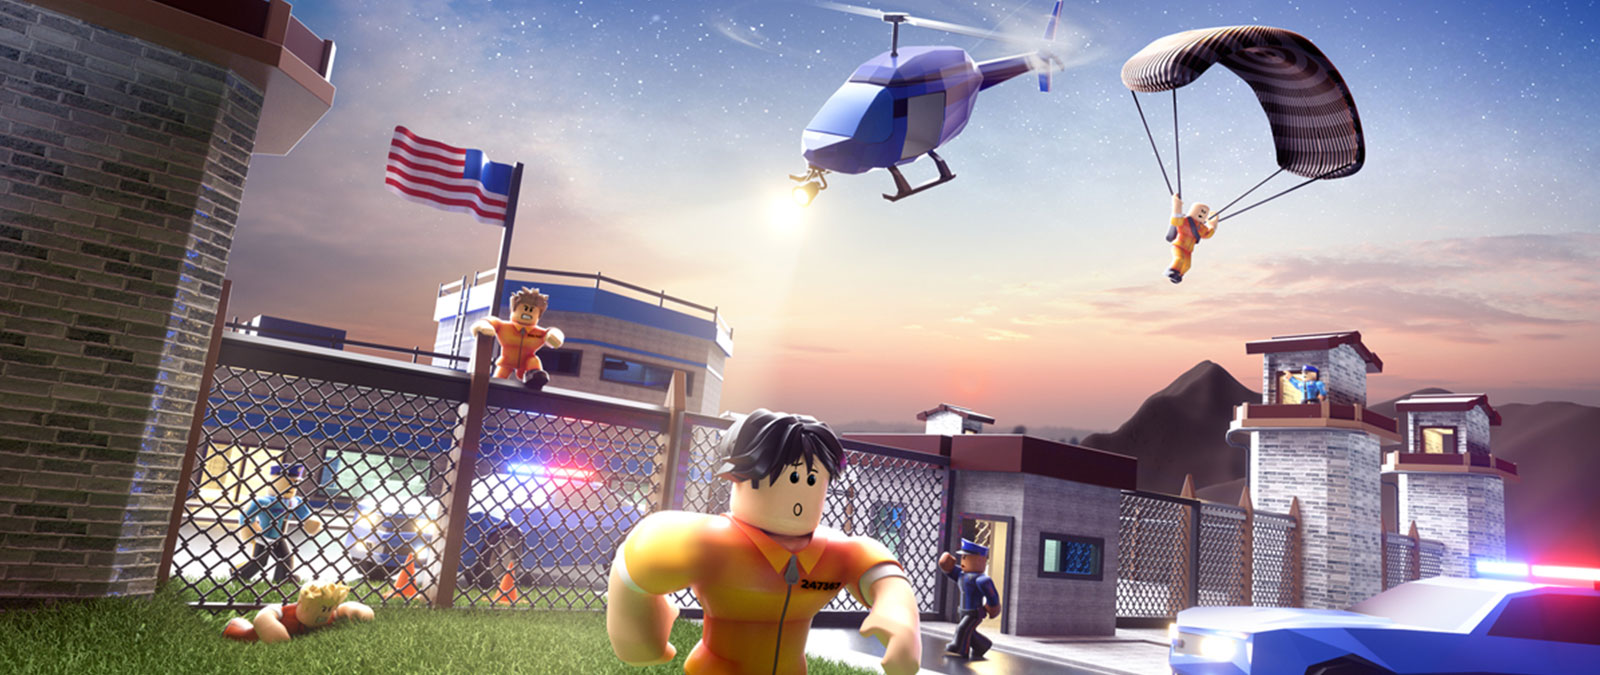 Персонажи Roblox убегают из тюрьмы, преследуемые полицией, в игре Jailbreak